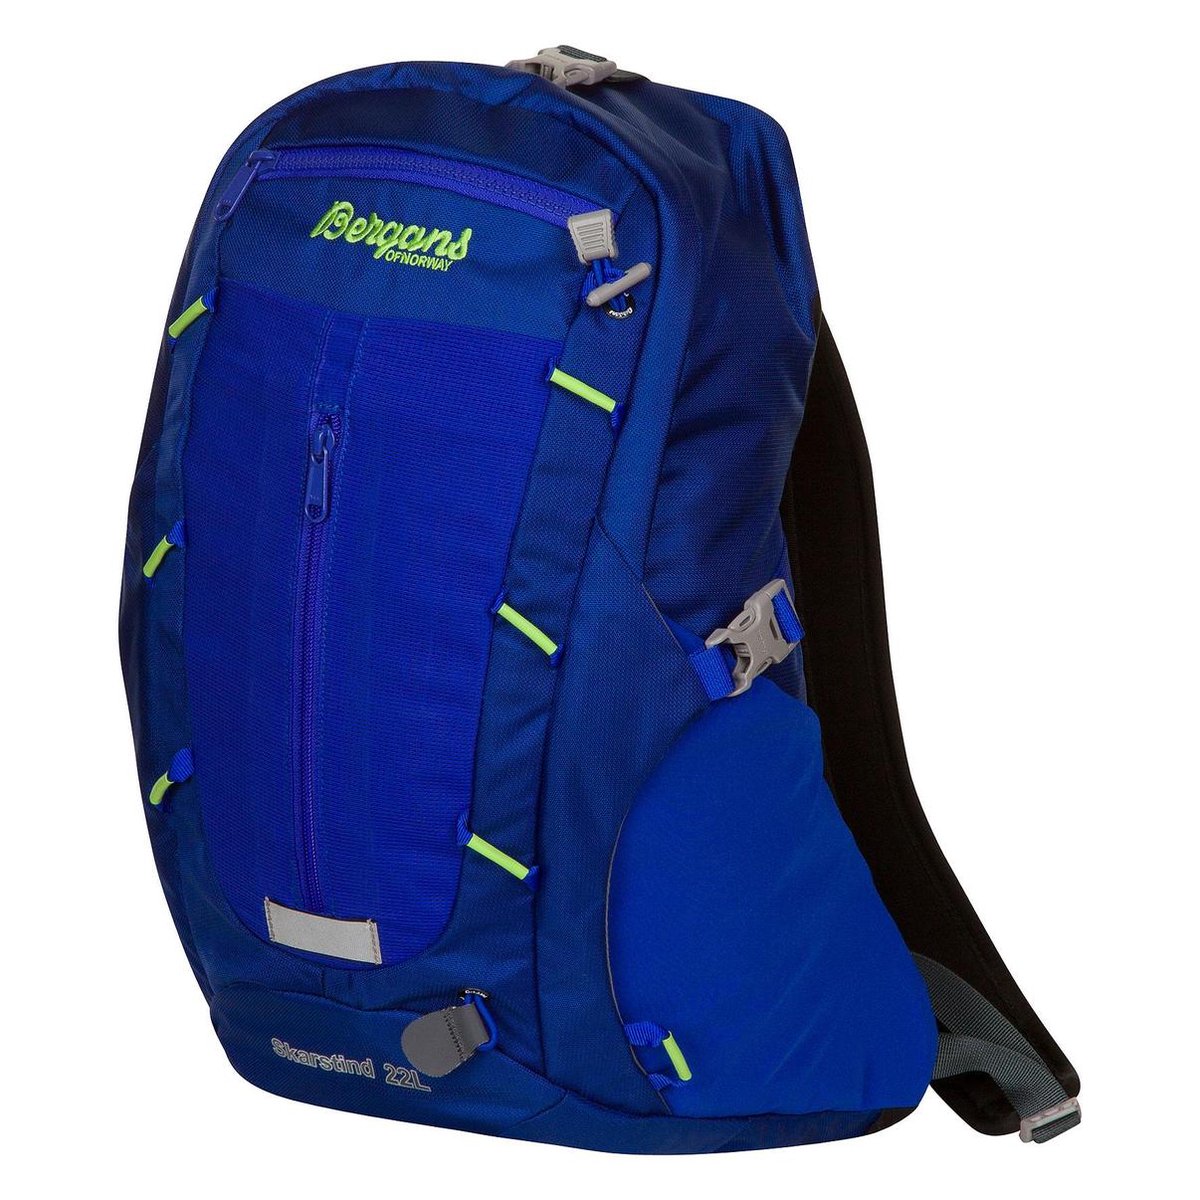 Bergans Skarstind - Backpack - 22 Liter - Blauw | bol.com